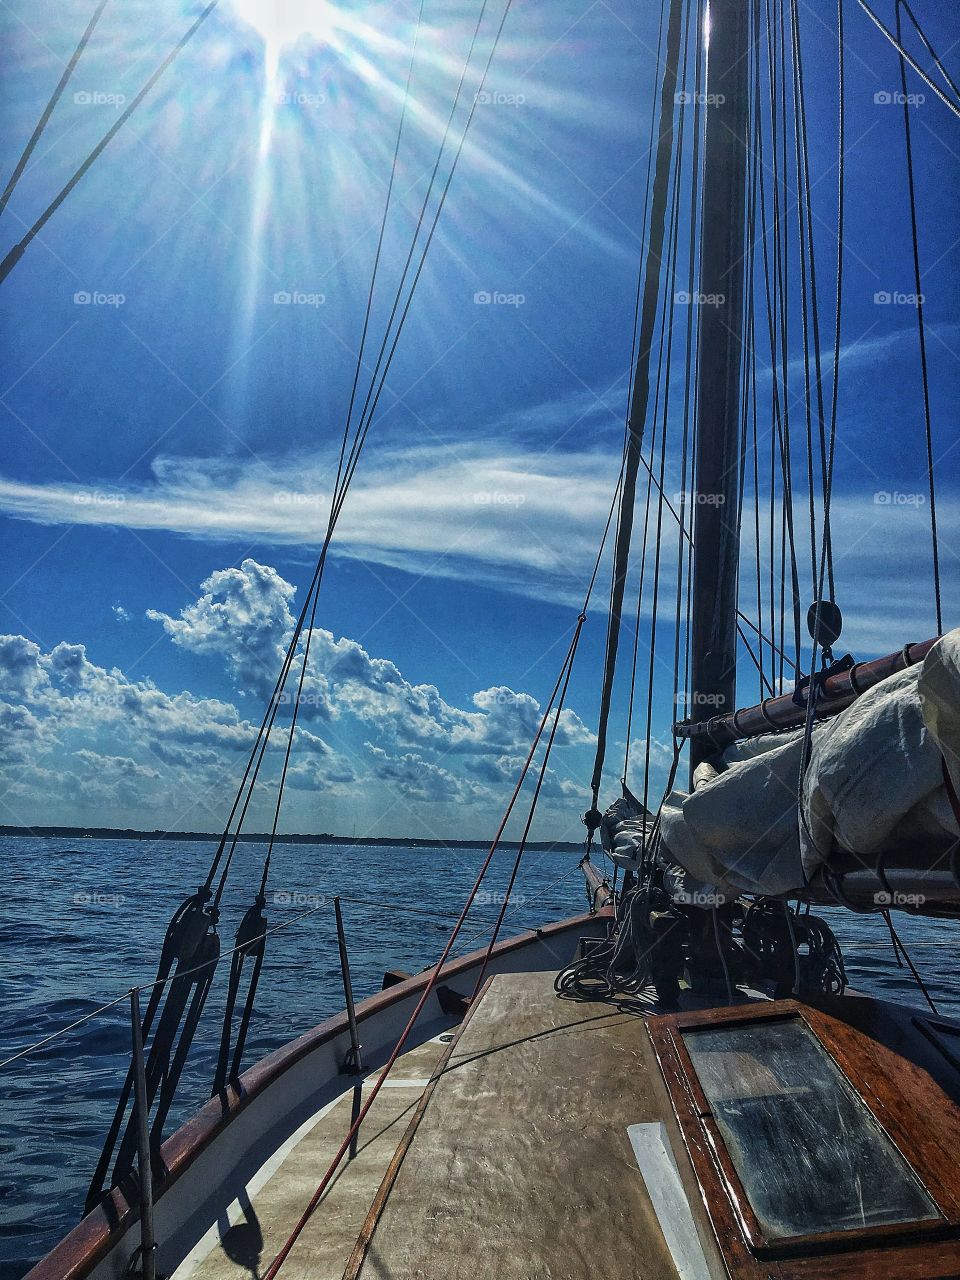 Sailing in Maine